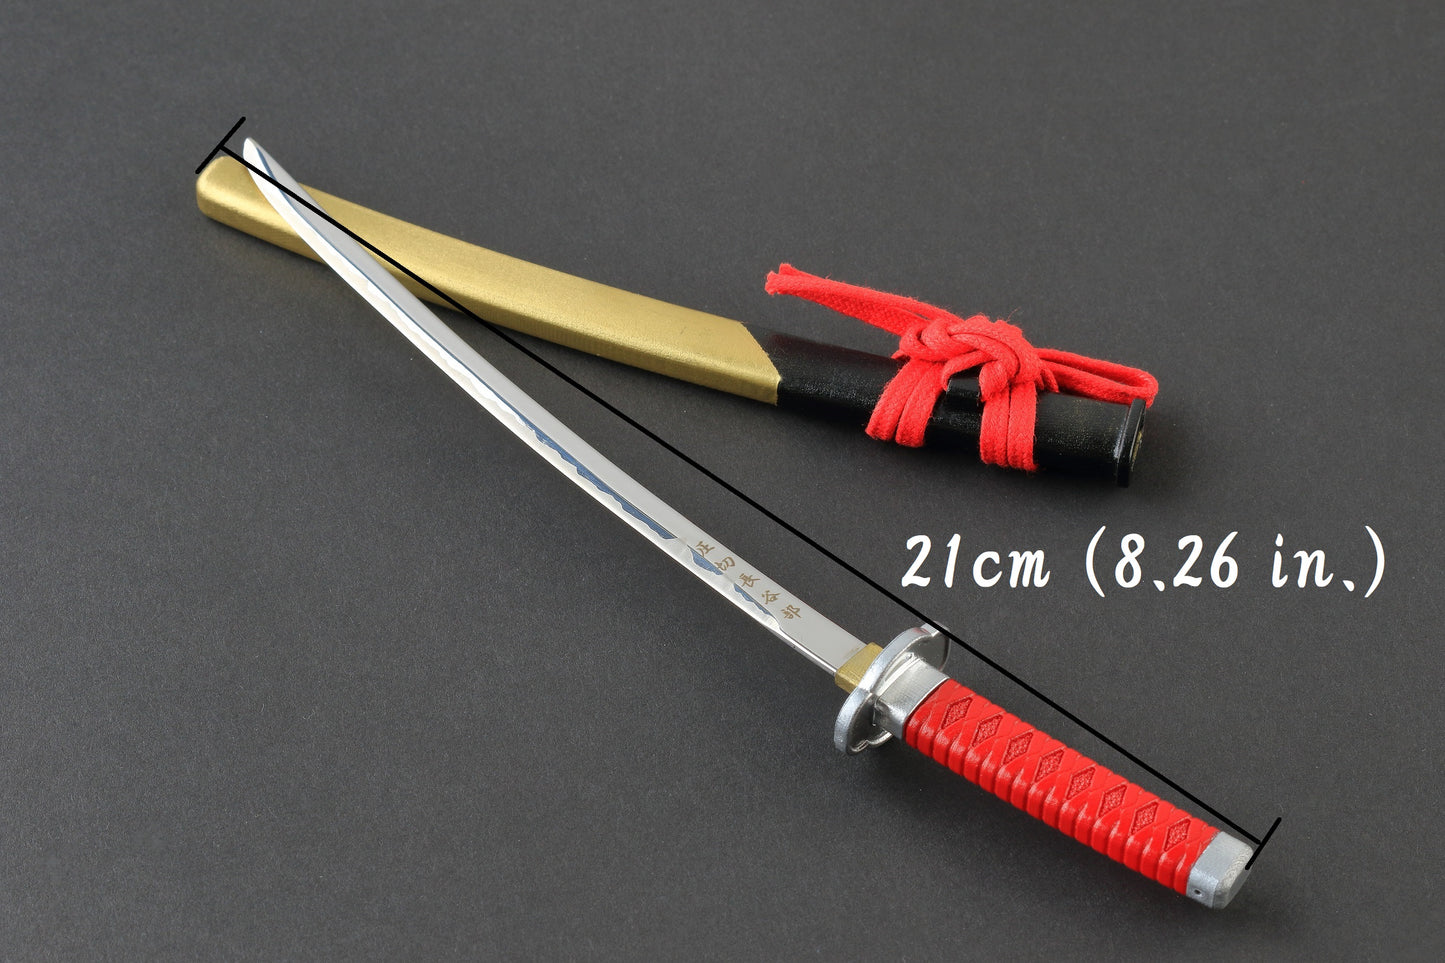 Letter Opener SAMURAI KATANA SWORD Knife Desk Decor item 8 inch Length Safe Edge Oda Nobunaga Model MT-32N - JAPANESE GIFTS 